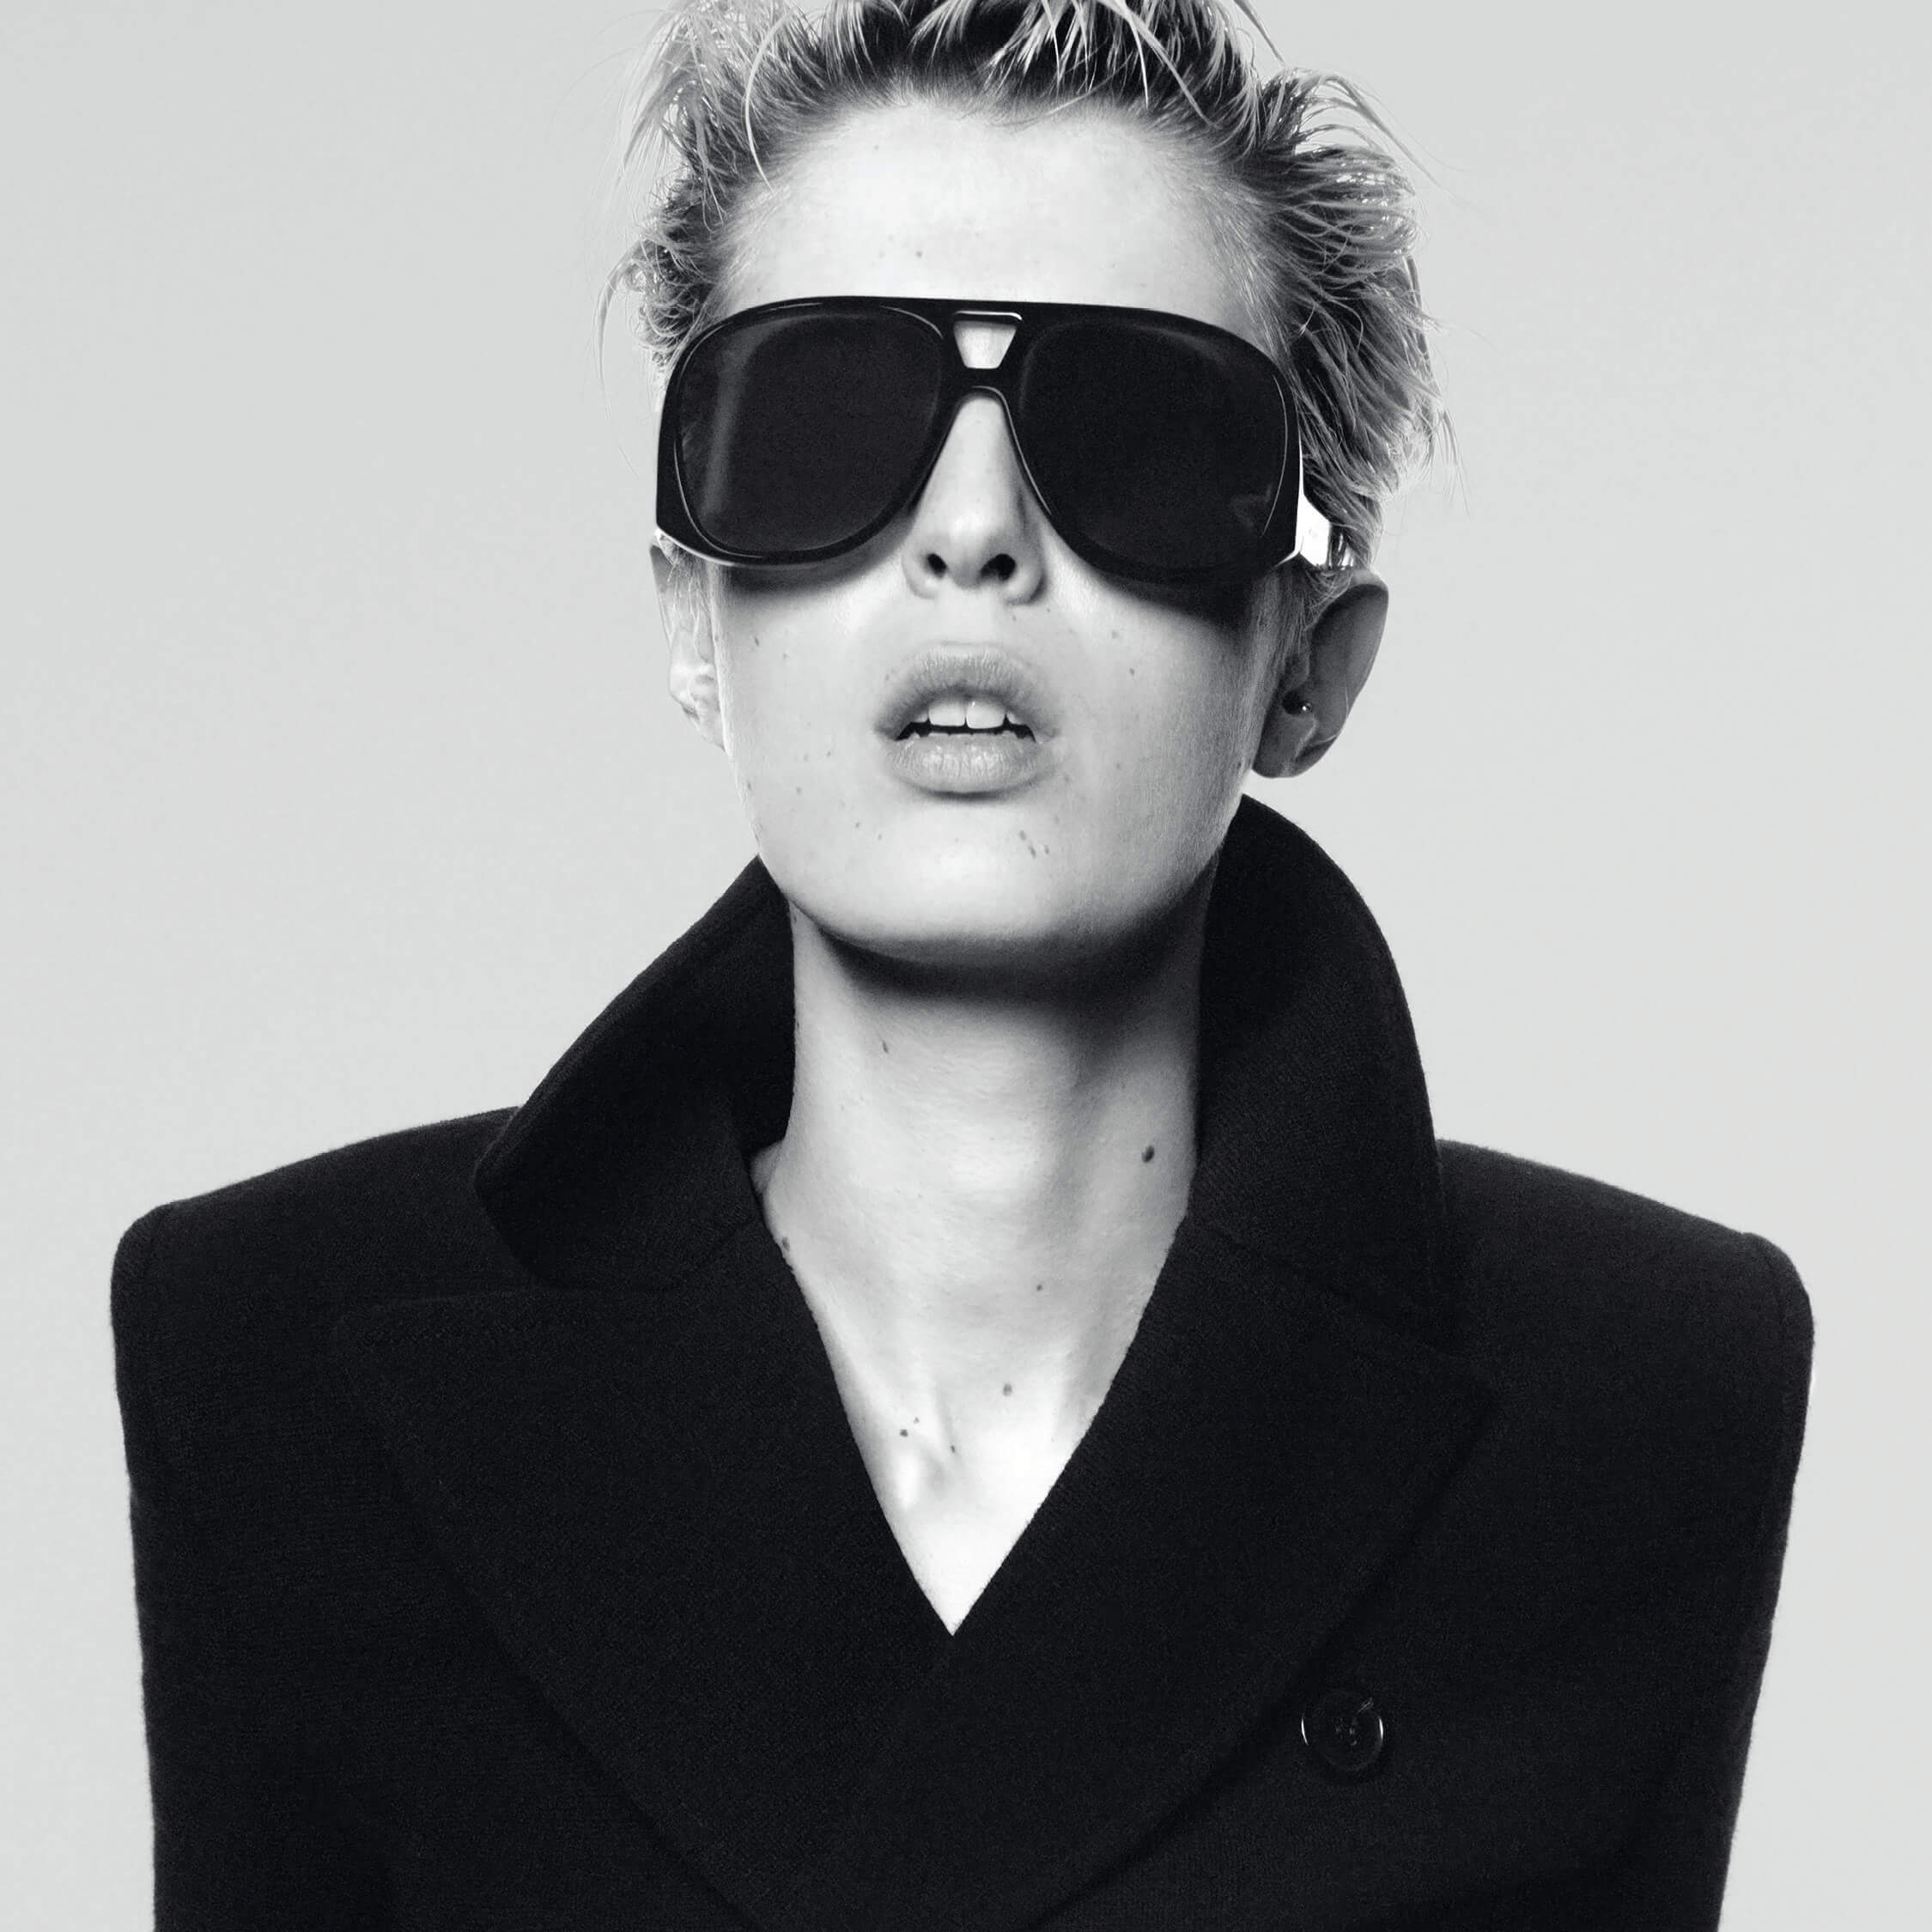 Saint Laurent Glasses and Sunglasses for Women & Men, YSL – All Eyes On Me